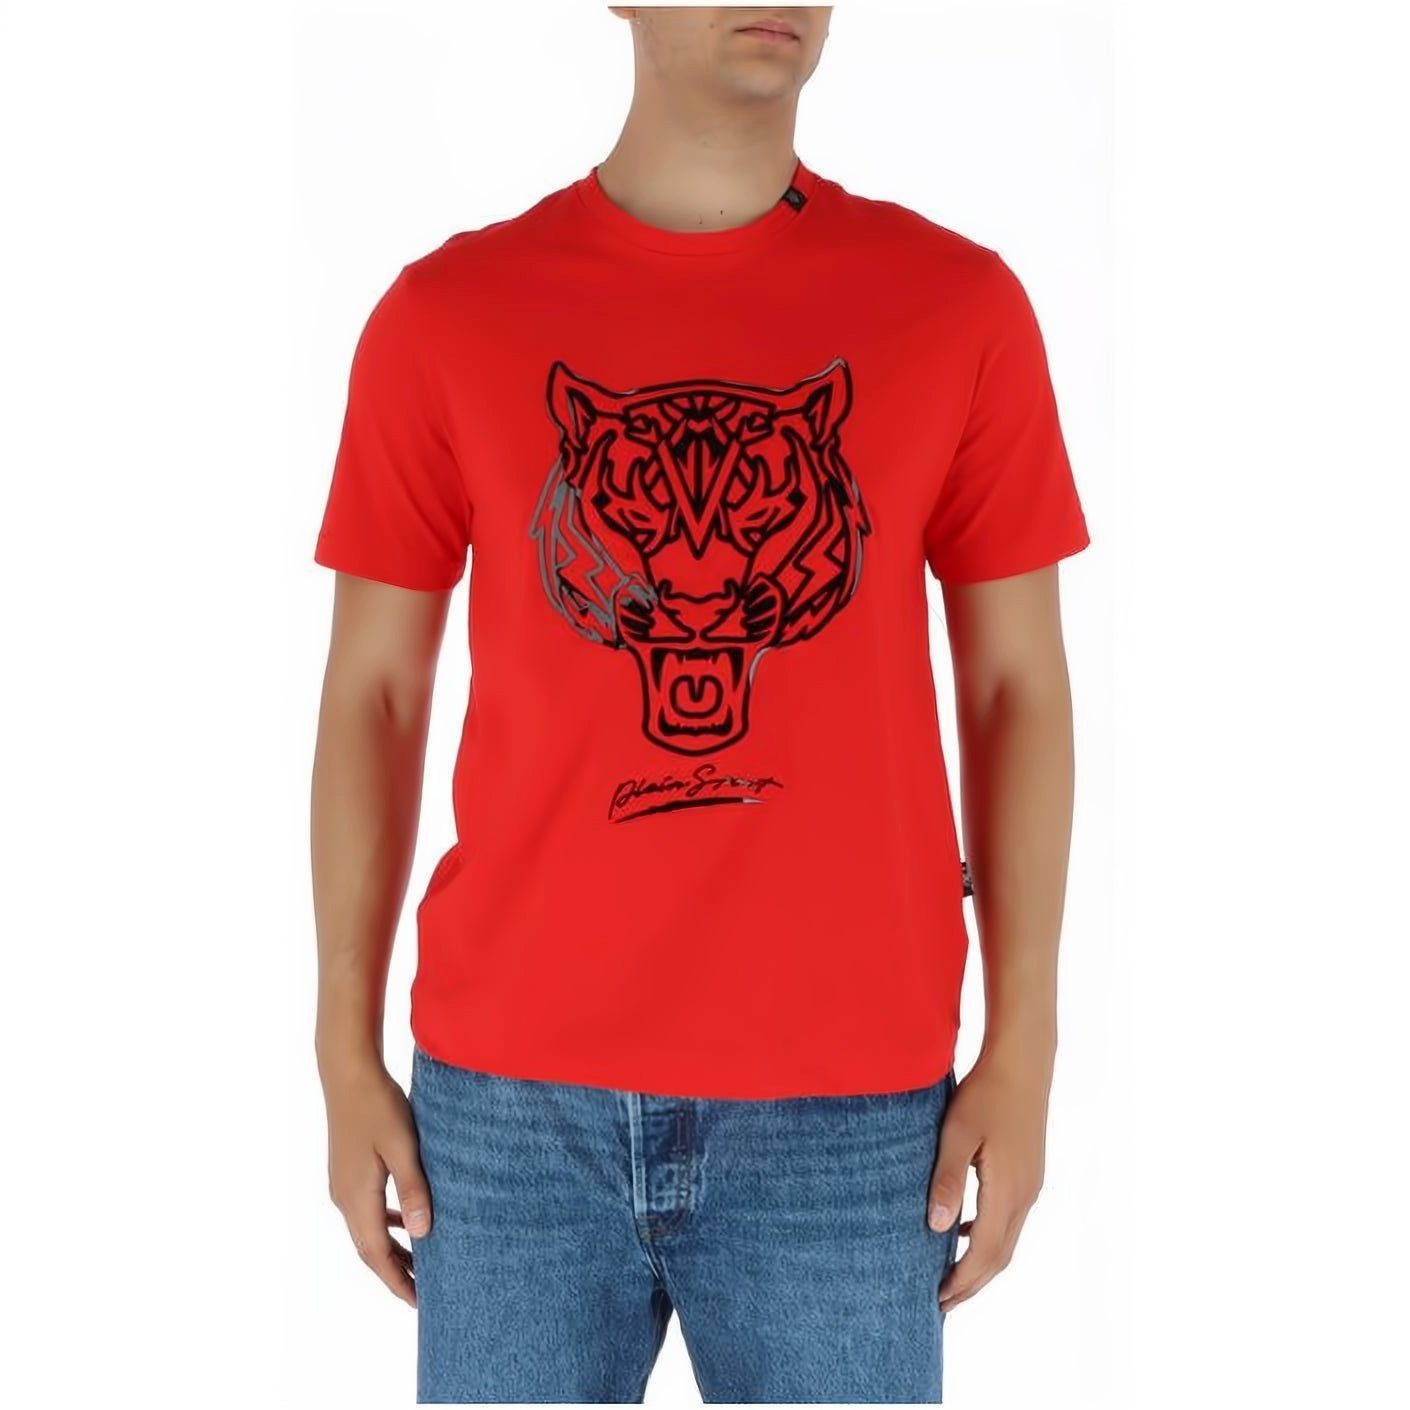 PLEIN SPORT T-Shirt ROUND NECK Stylischer Look, hoher Tragekomfort, vielfältige Farbauswahl | T-Shirts